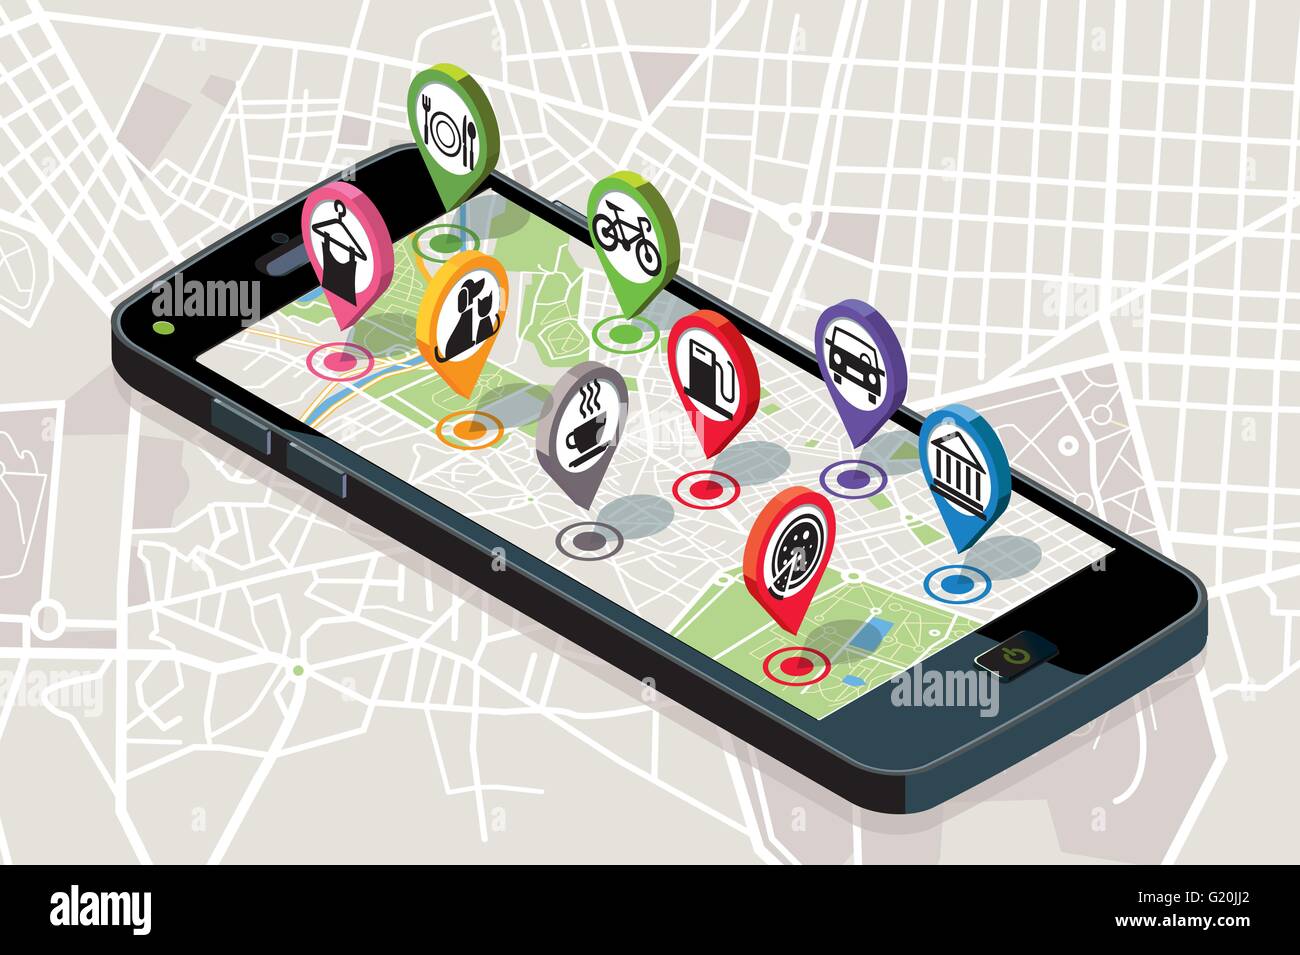 Stadtplan mit GPS-Dienste Symbole. Smartphone. Auf dem Bildschirm es einer Vektorkarte der Stadt, dem Stifte mit dem Standort angezeigt werden. Stock Vektor